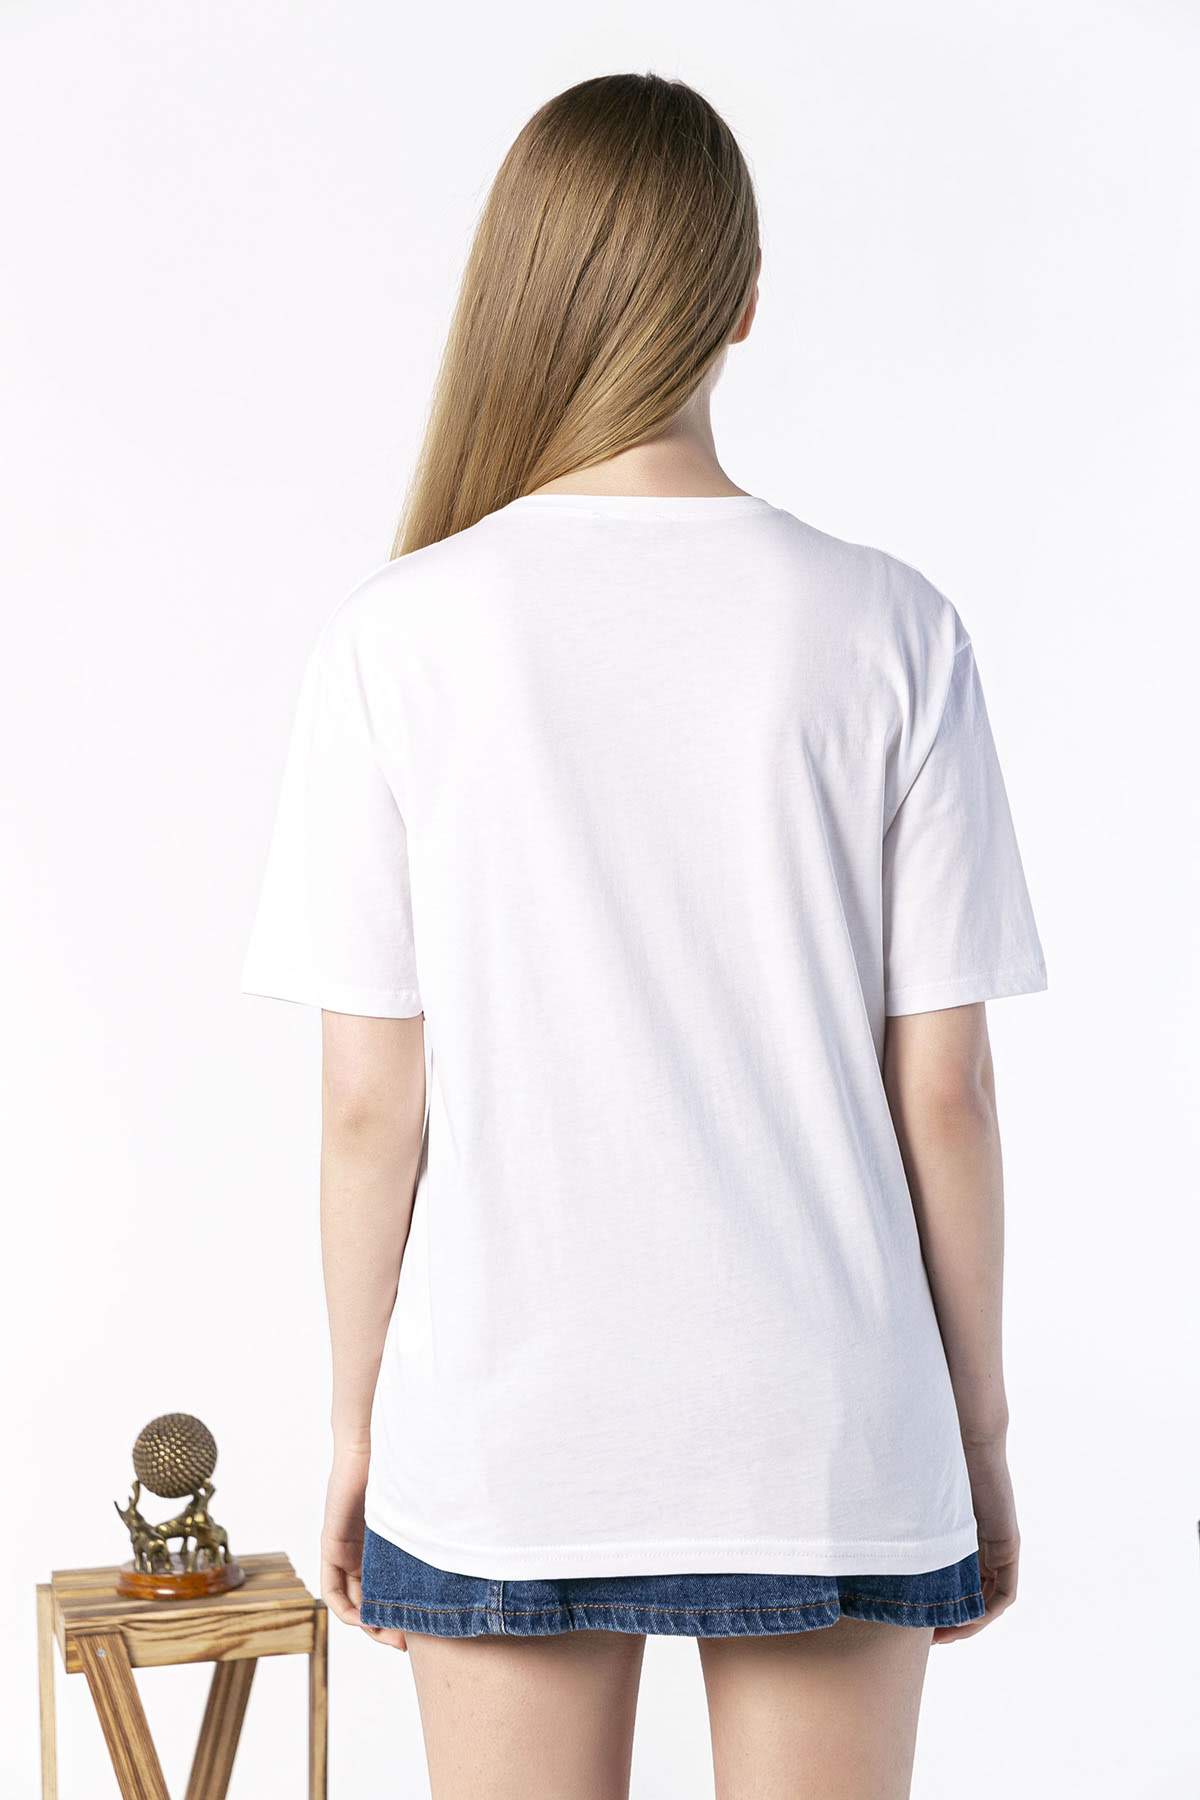 Kadın Oversize Nakış İşlemeli Silhouette Baskılı Tshirt